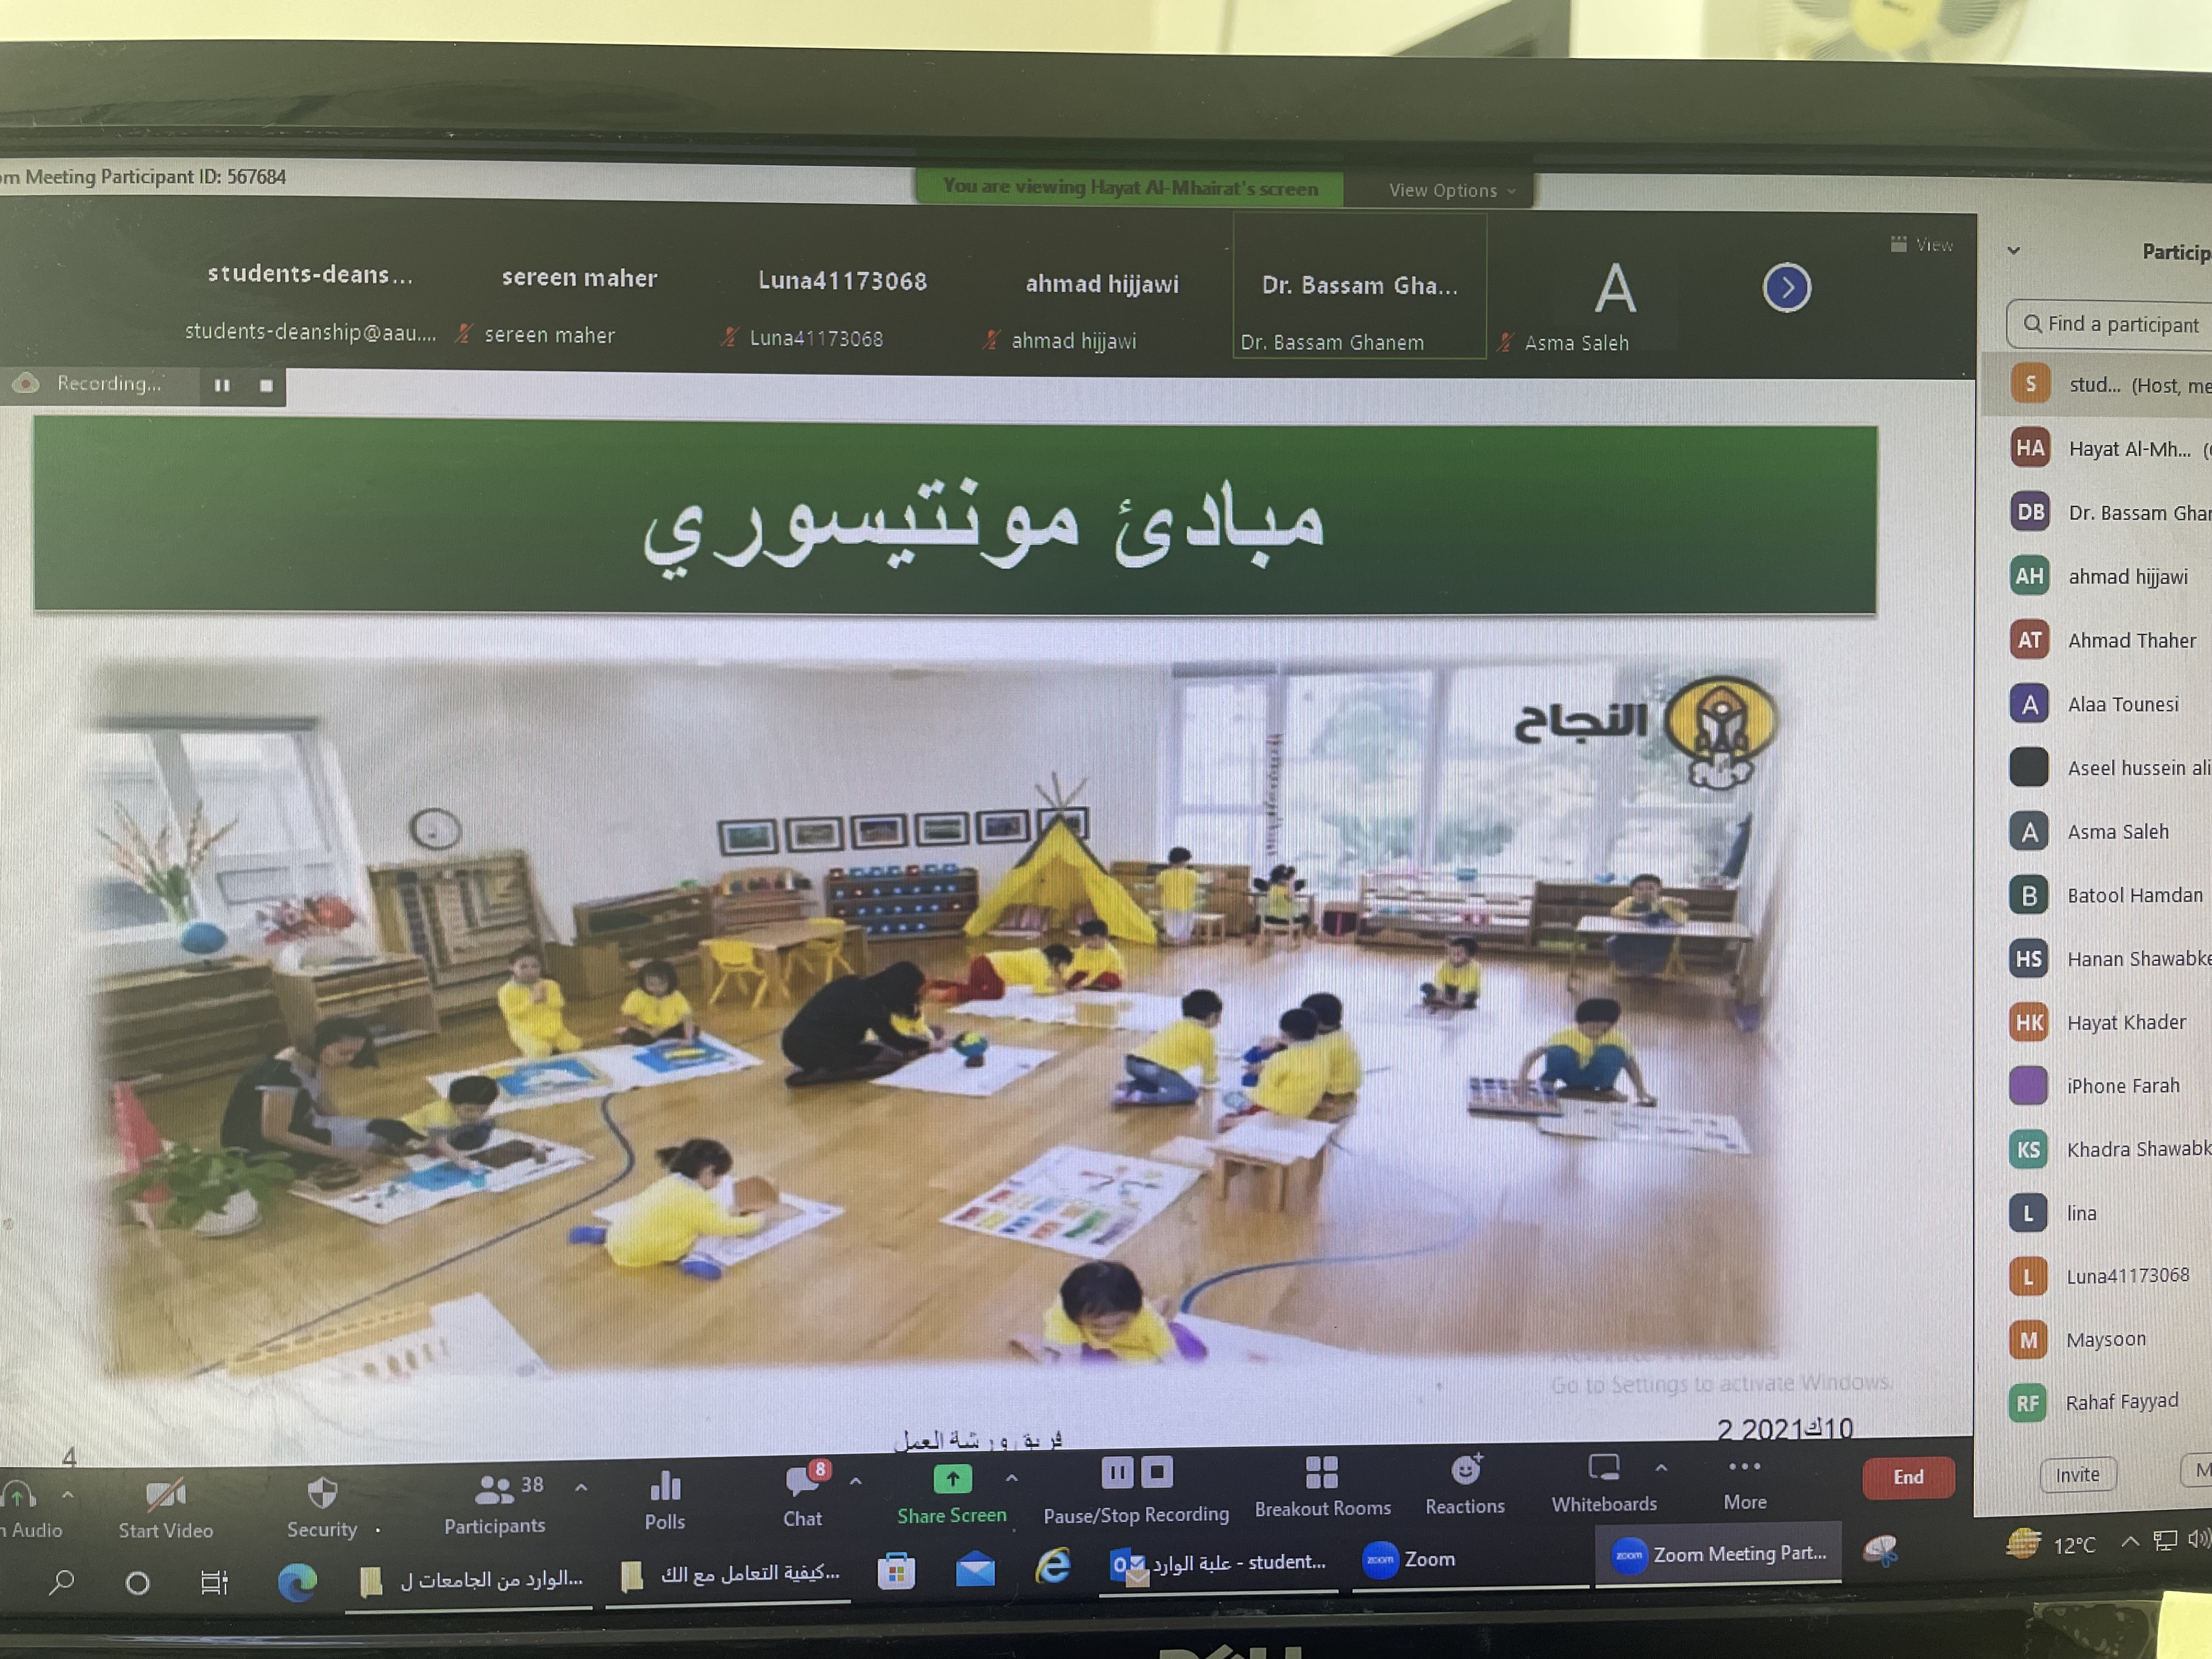 دورة "إعداد معلم المونتيسوري" لطلبة جامعة عمان العربية2